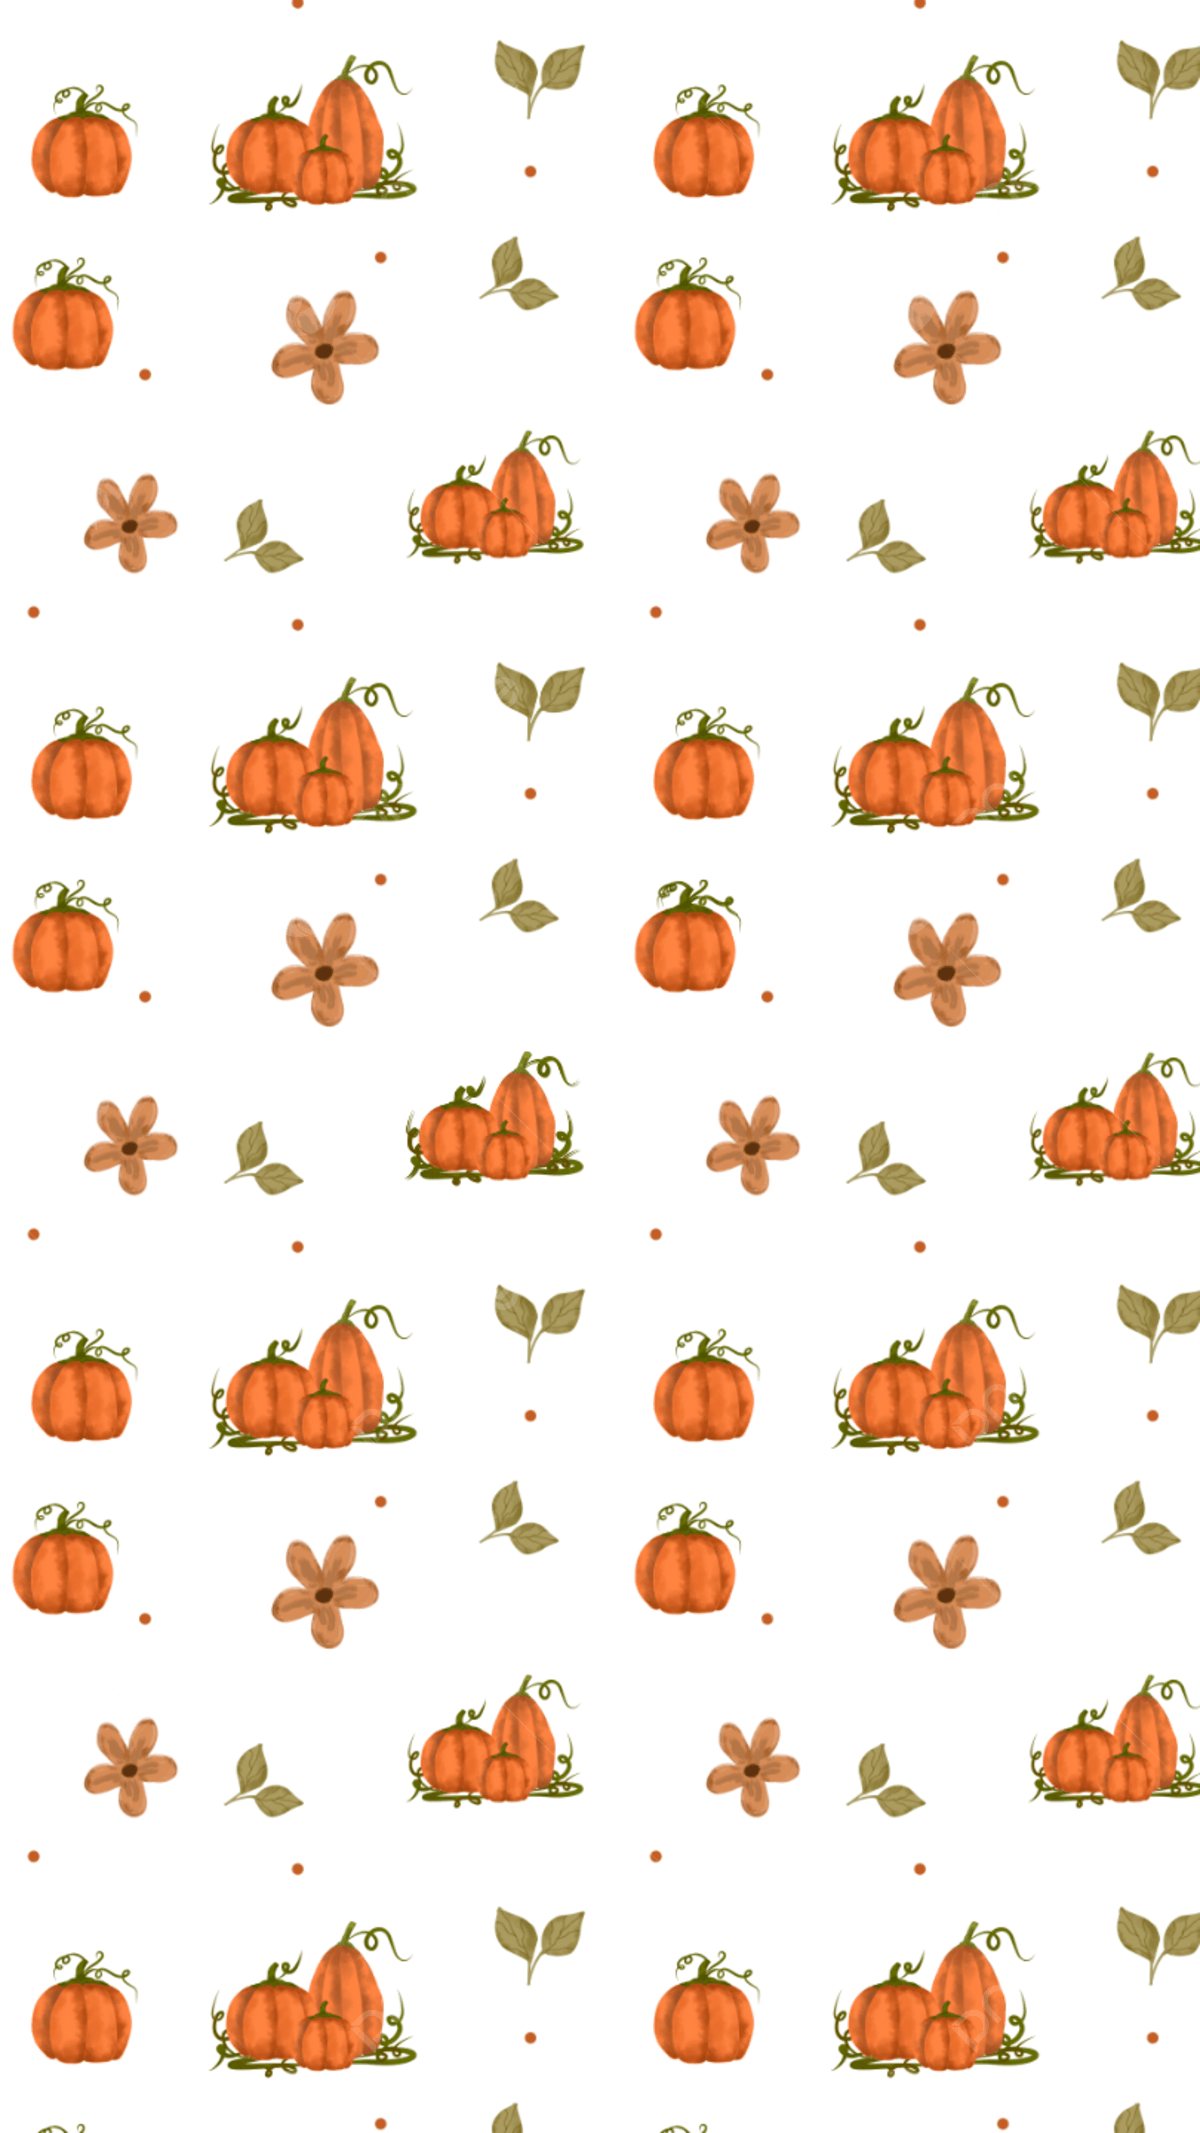 Cute Orange Pumpkins Wallpaper Handphone For Fall Season Background, Pumpkins Wallpaper, Fall Wallpaper, Wallpaper Handphone HD Background Image for Free Download